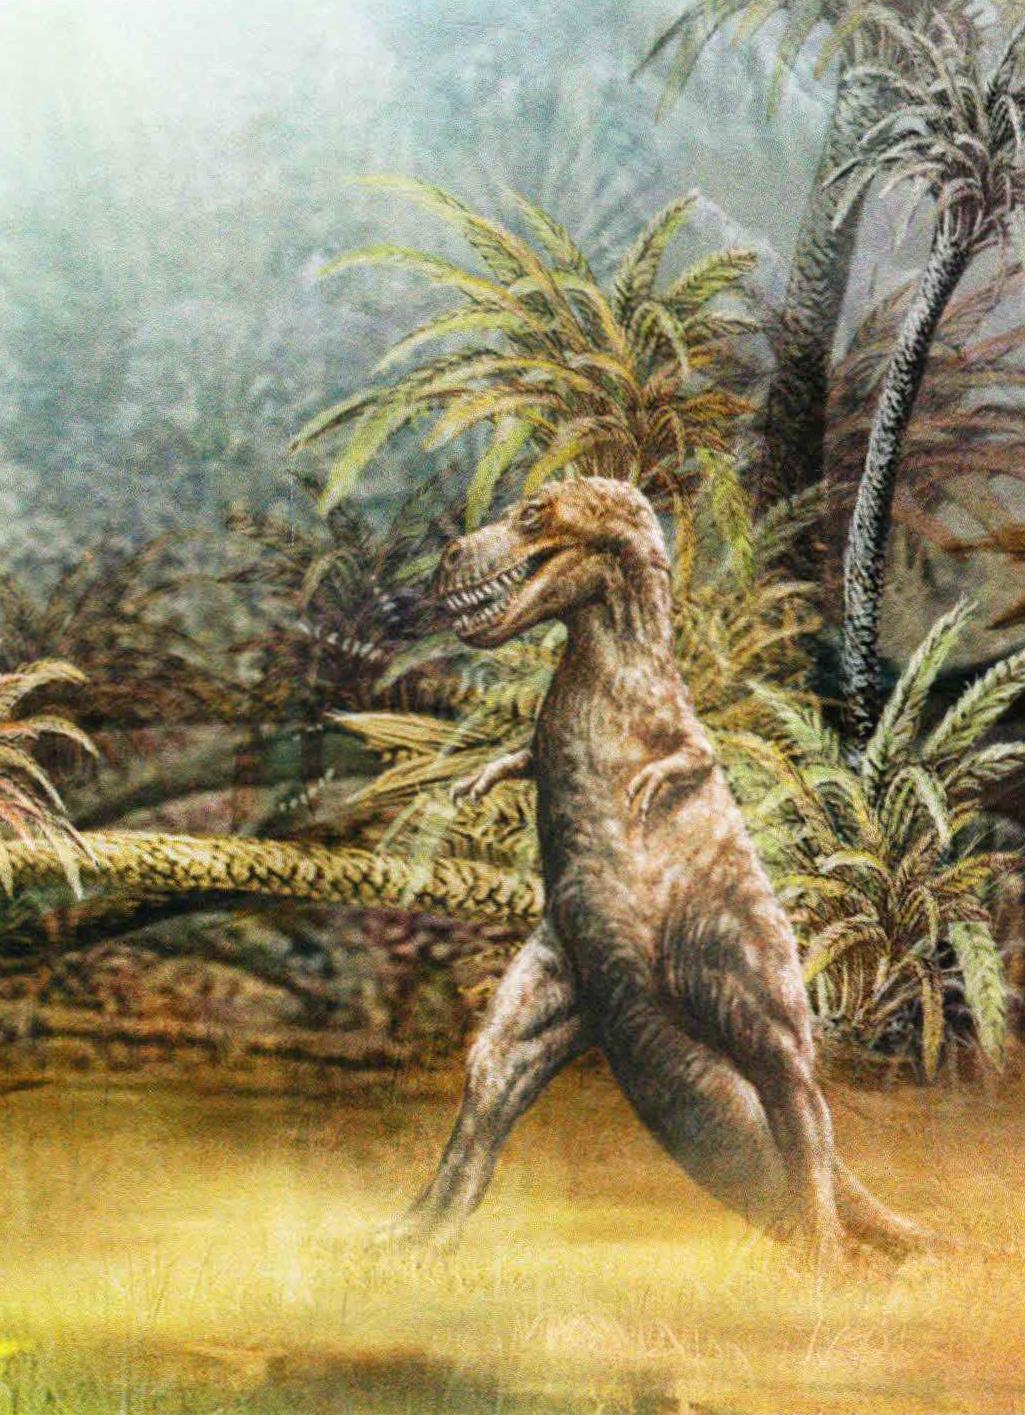 Тираннозавр, по-видимому, жил в местах с редким древостоем и на опушках лесов.